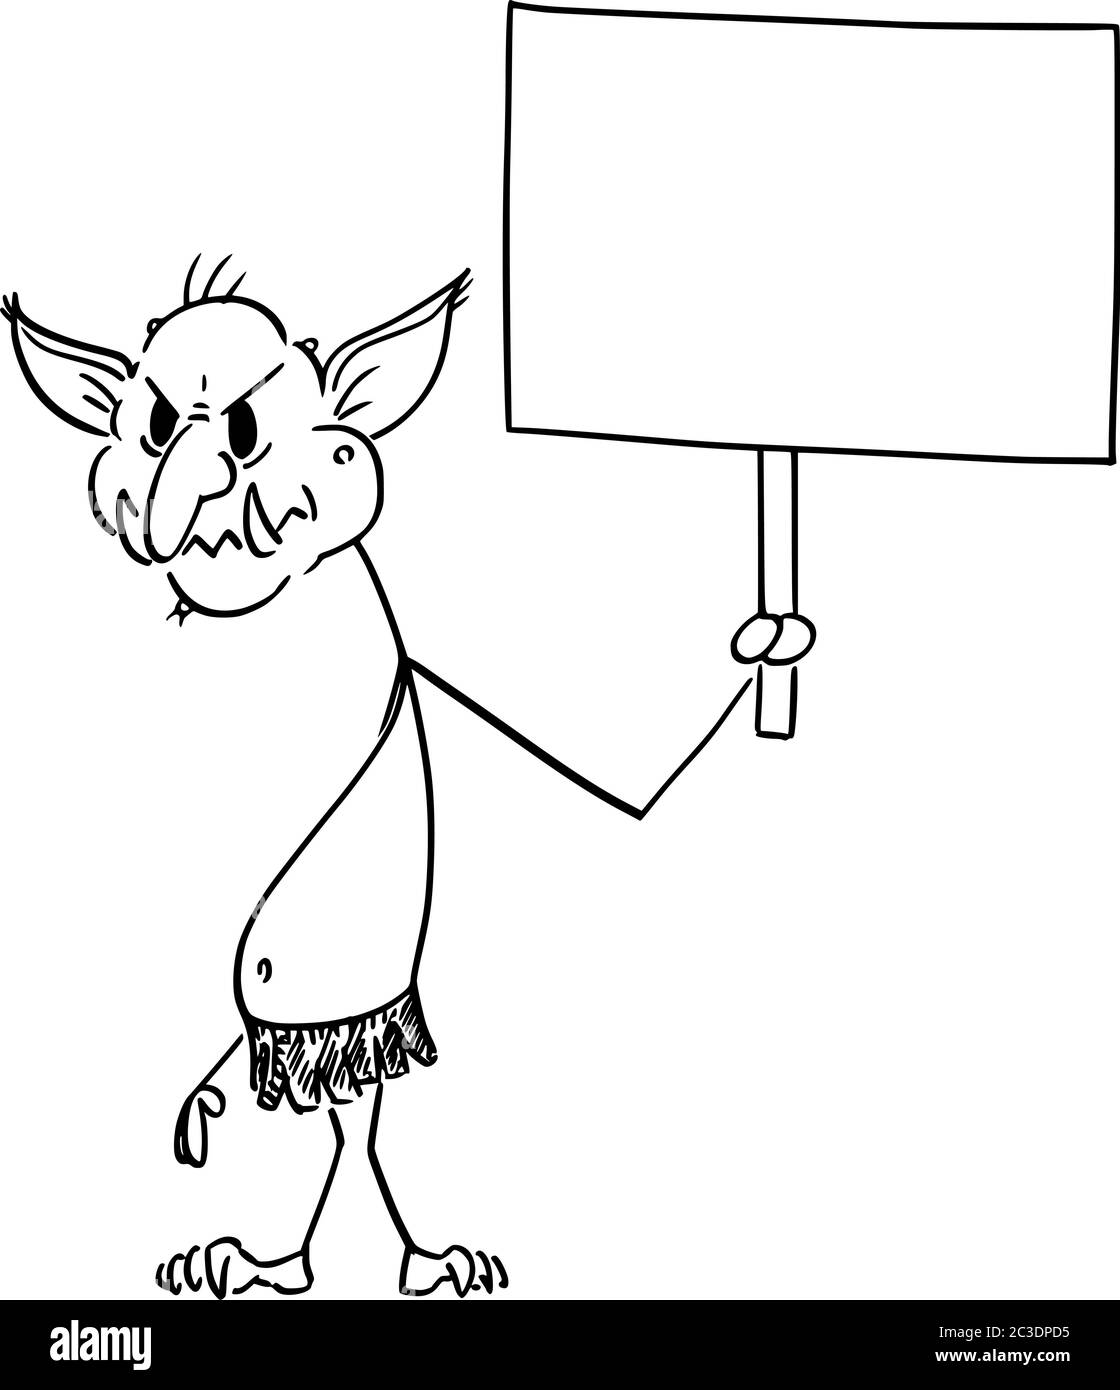 Vettore cartoon figura disegno disegno illustrazione concettuale di Internet virtuale troll assaulting un altro utenti online in guerre di fiamma con segno vuoto. Illustrazione Vettoriale